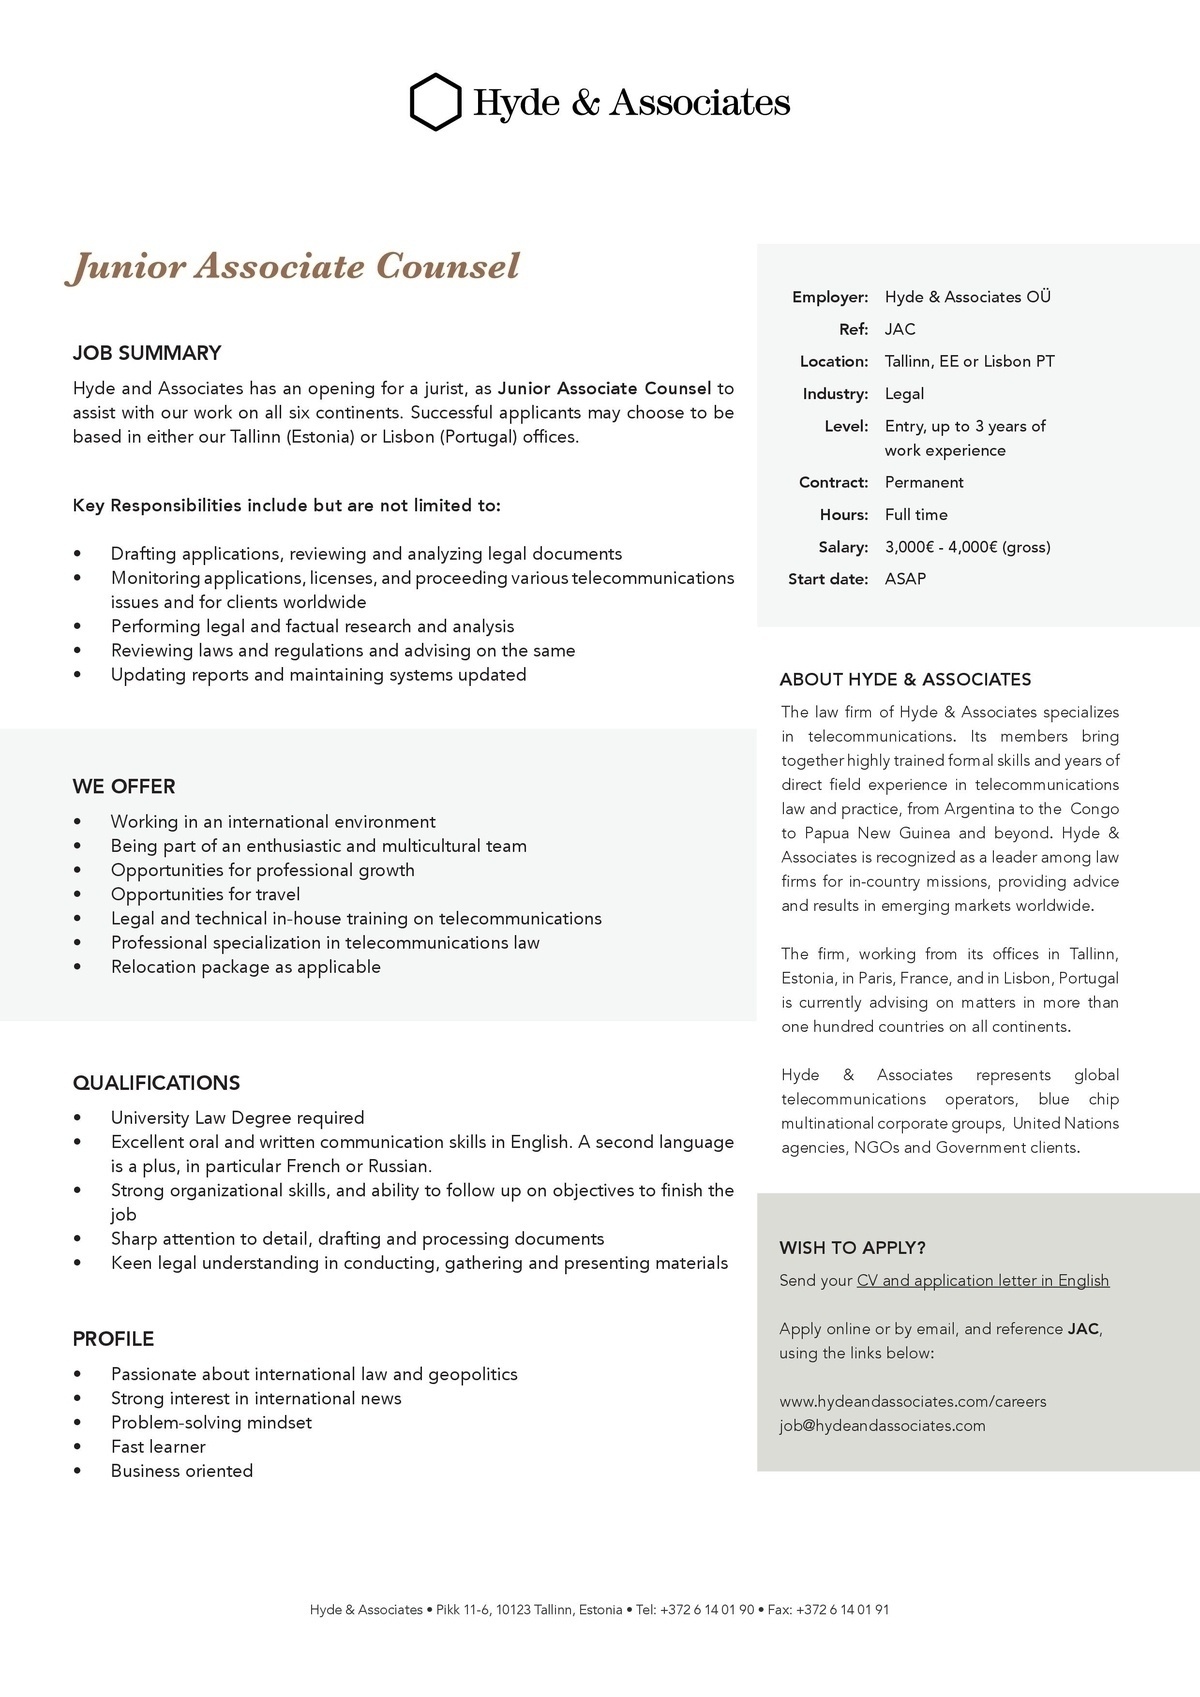 HYDE & ASSOCIATES OÜ Junior Associate Councel